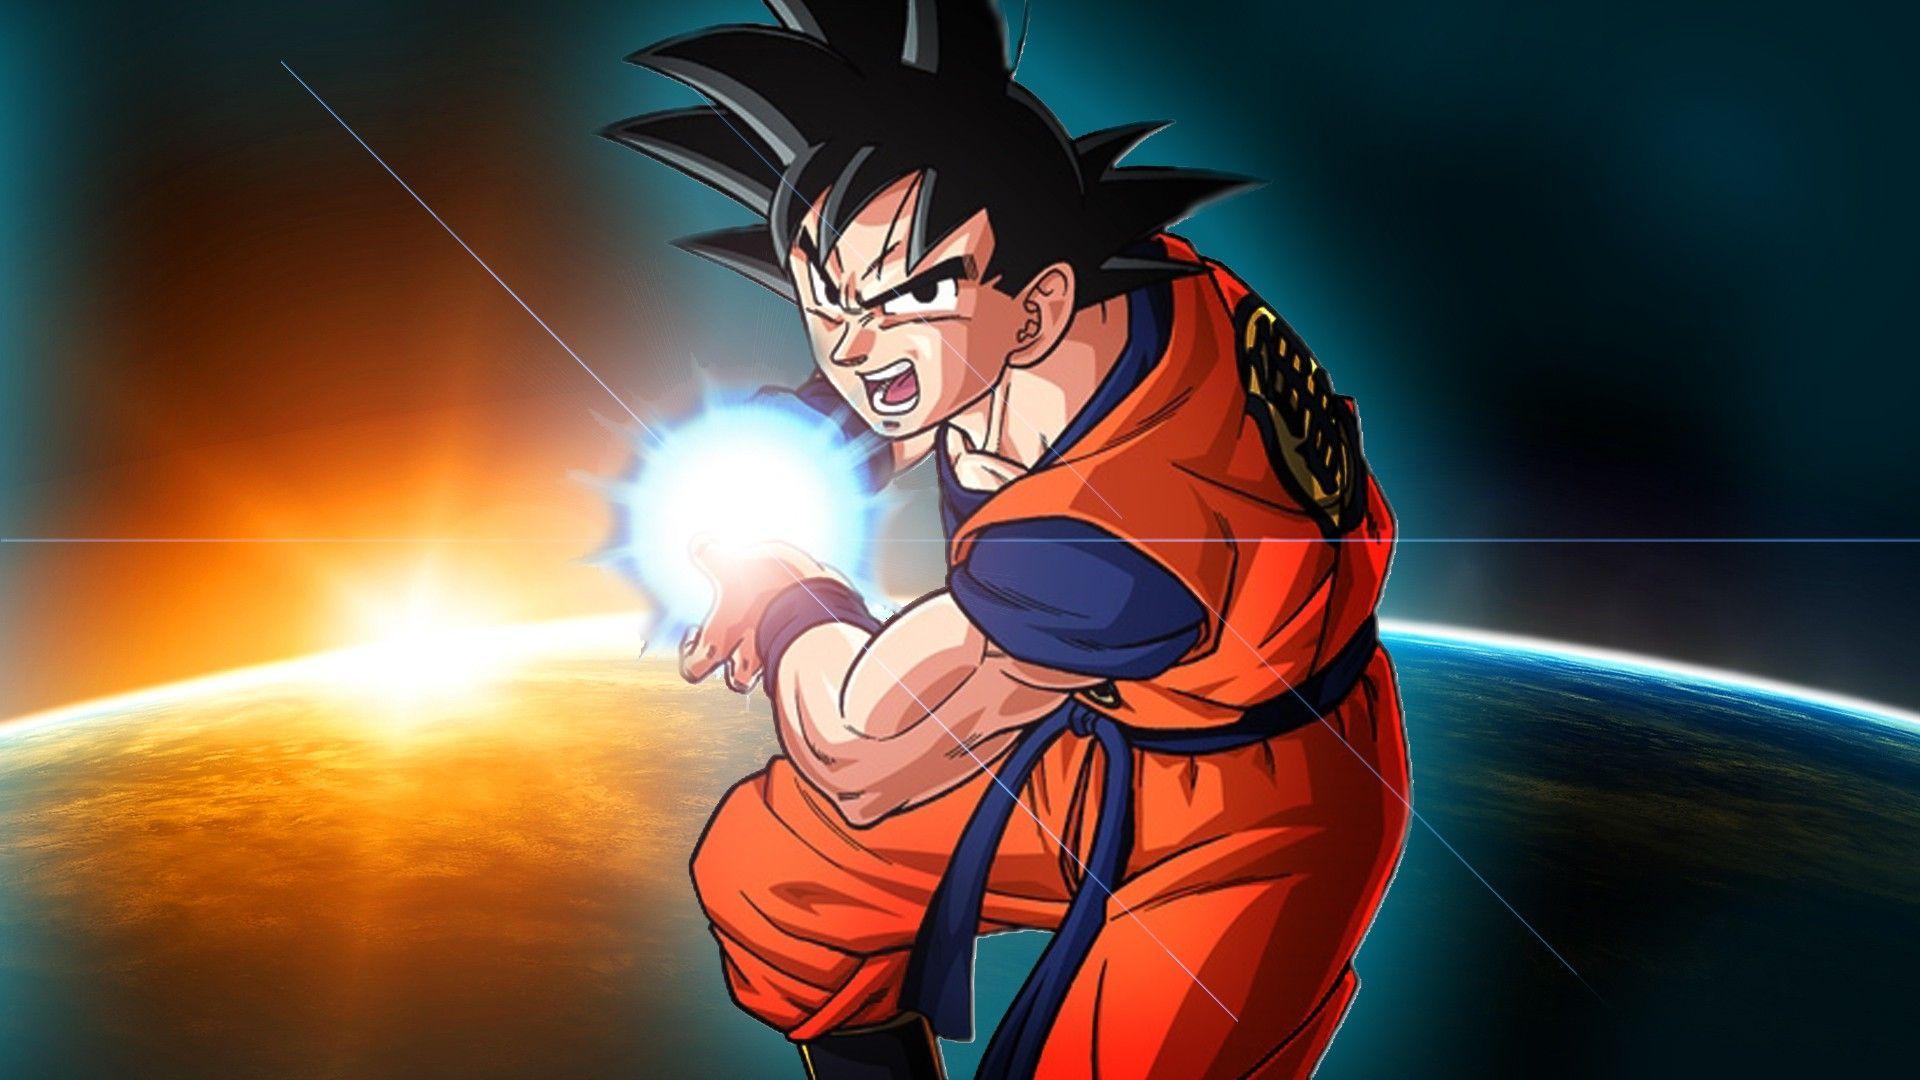 Dragon Ball Z Goku Wallpapers - Top Những Hình Ảnh Đẹp